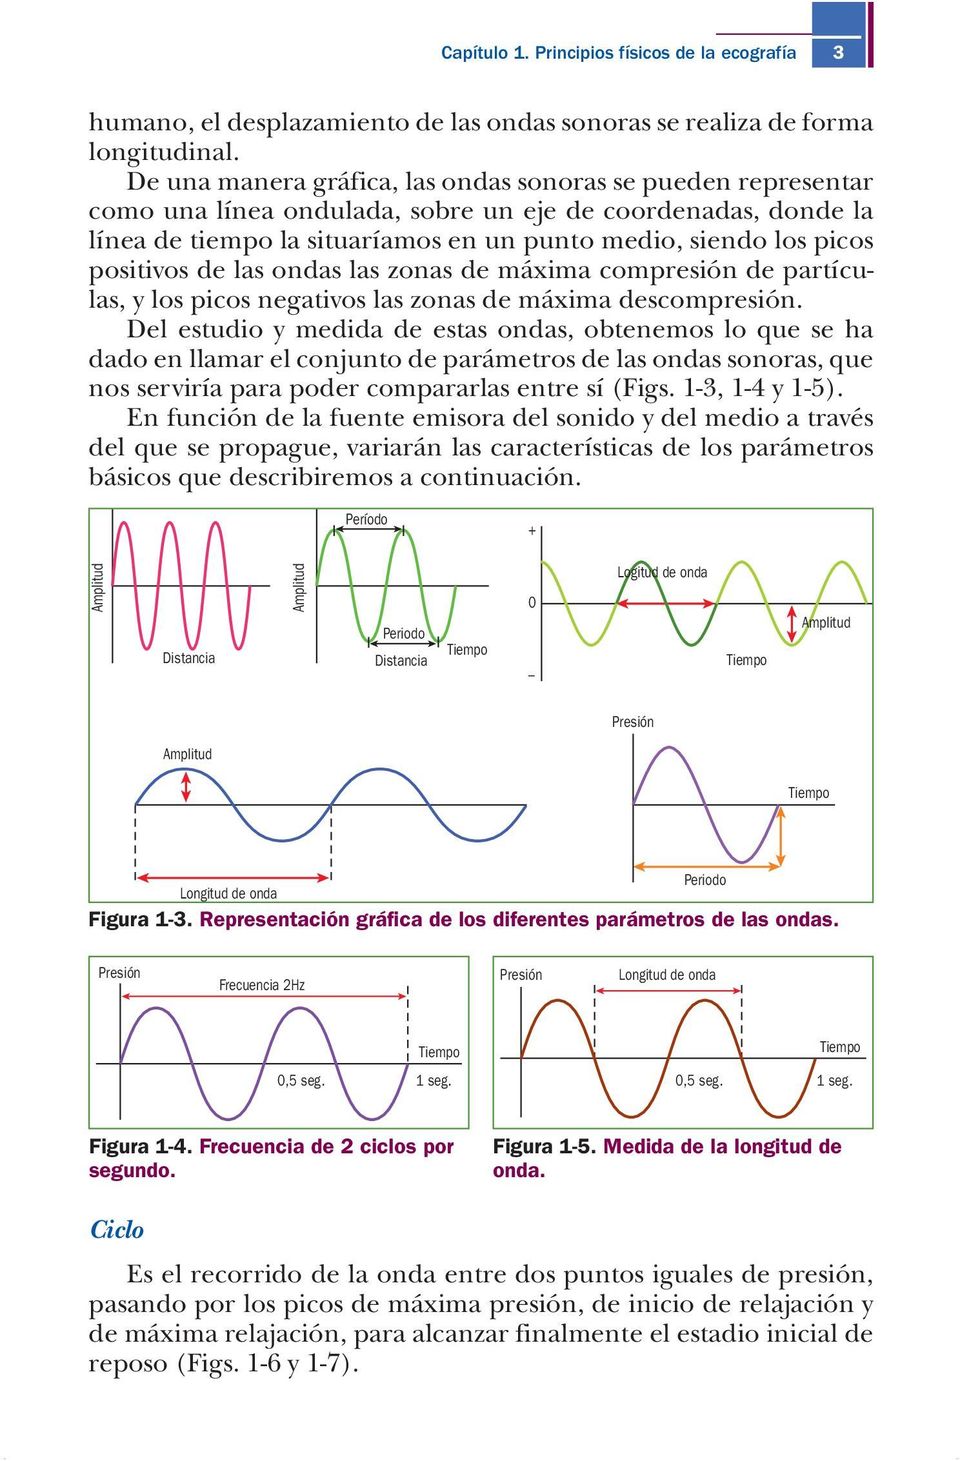 positivos de las ondas las zonas de máxima compresión de partículas, y los picos negativos las zonas de máxima descompresión.